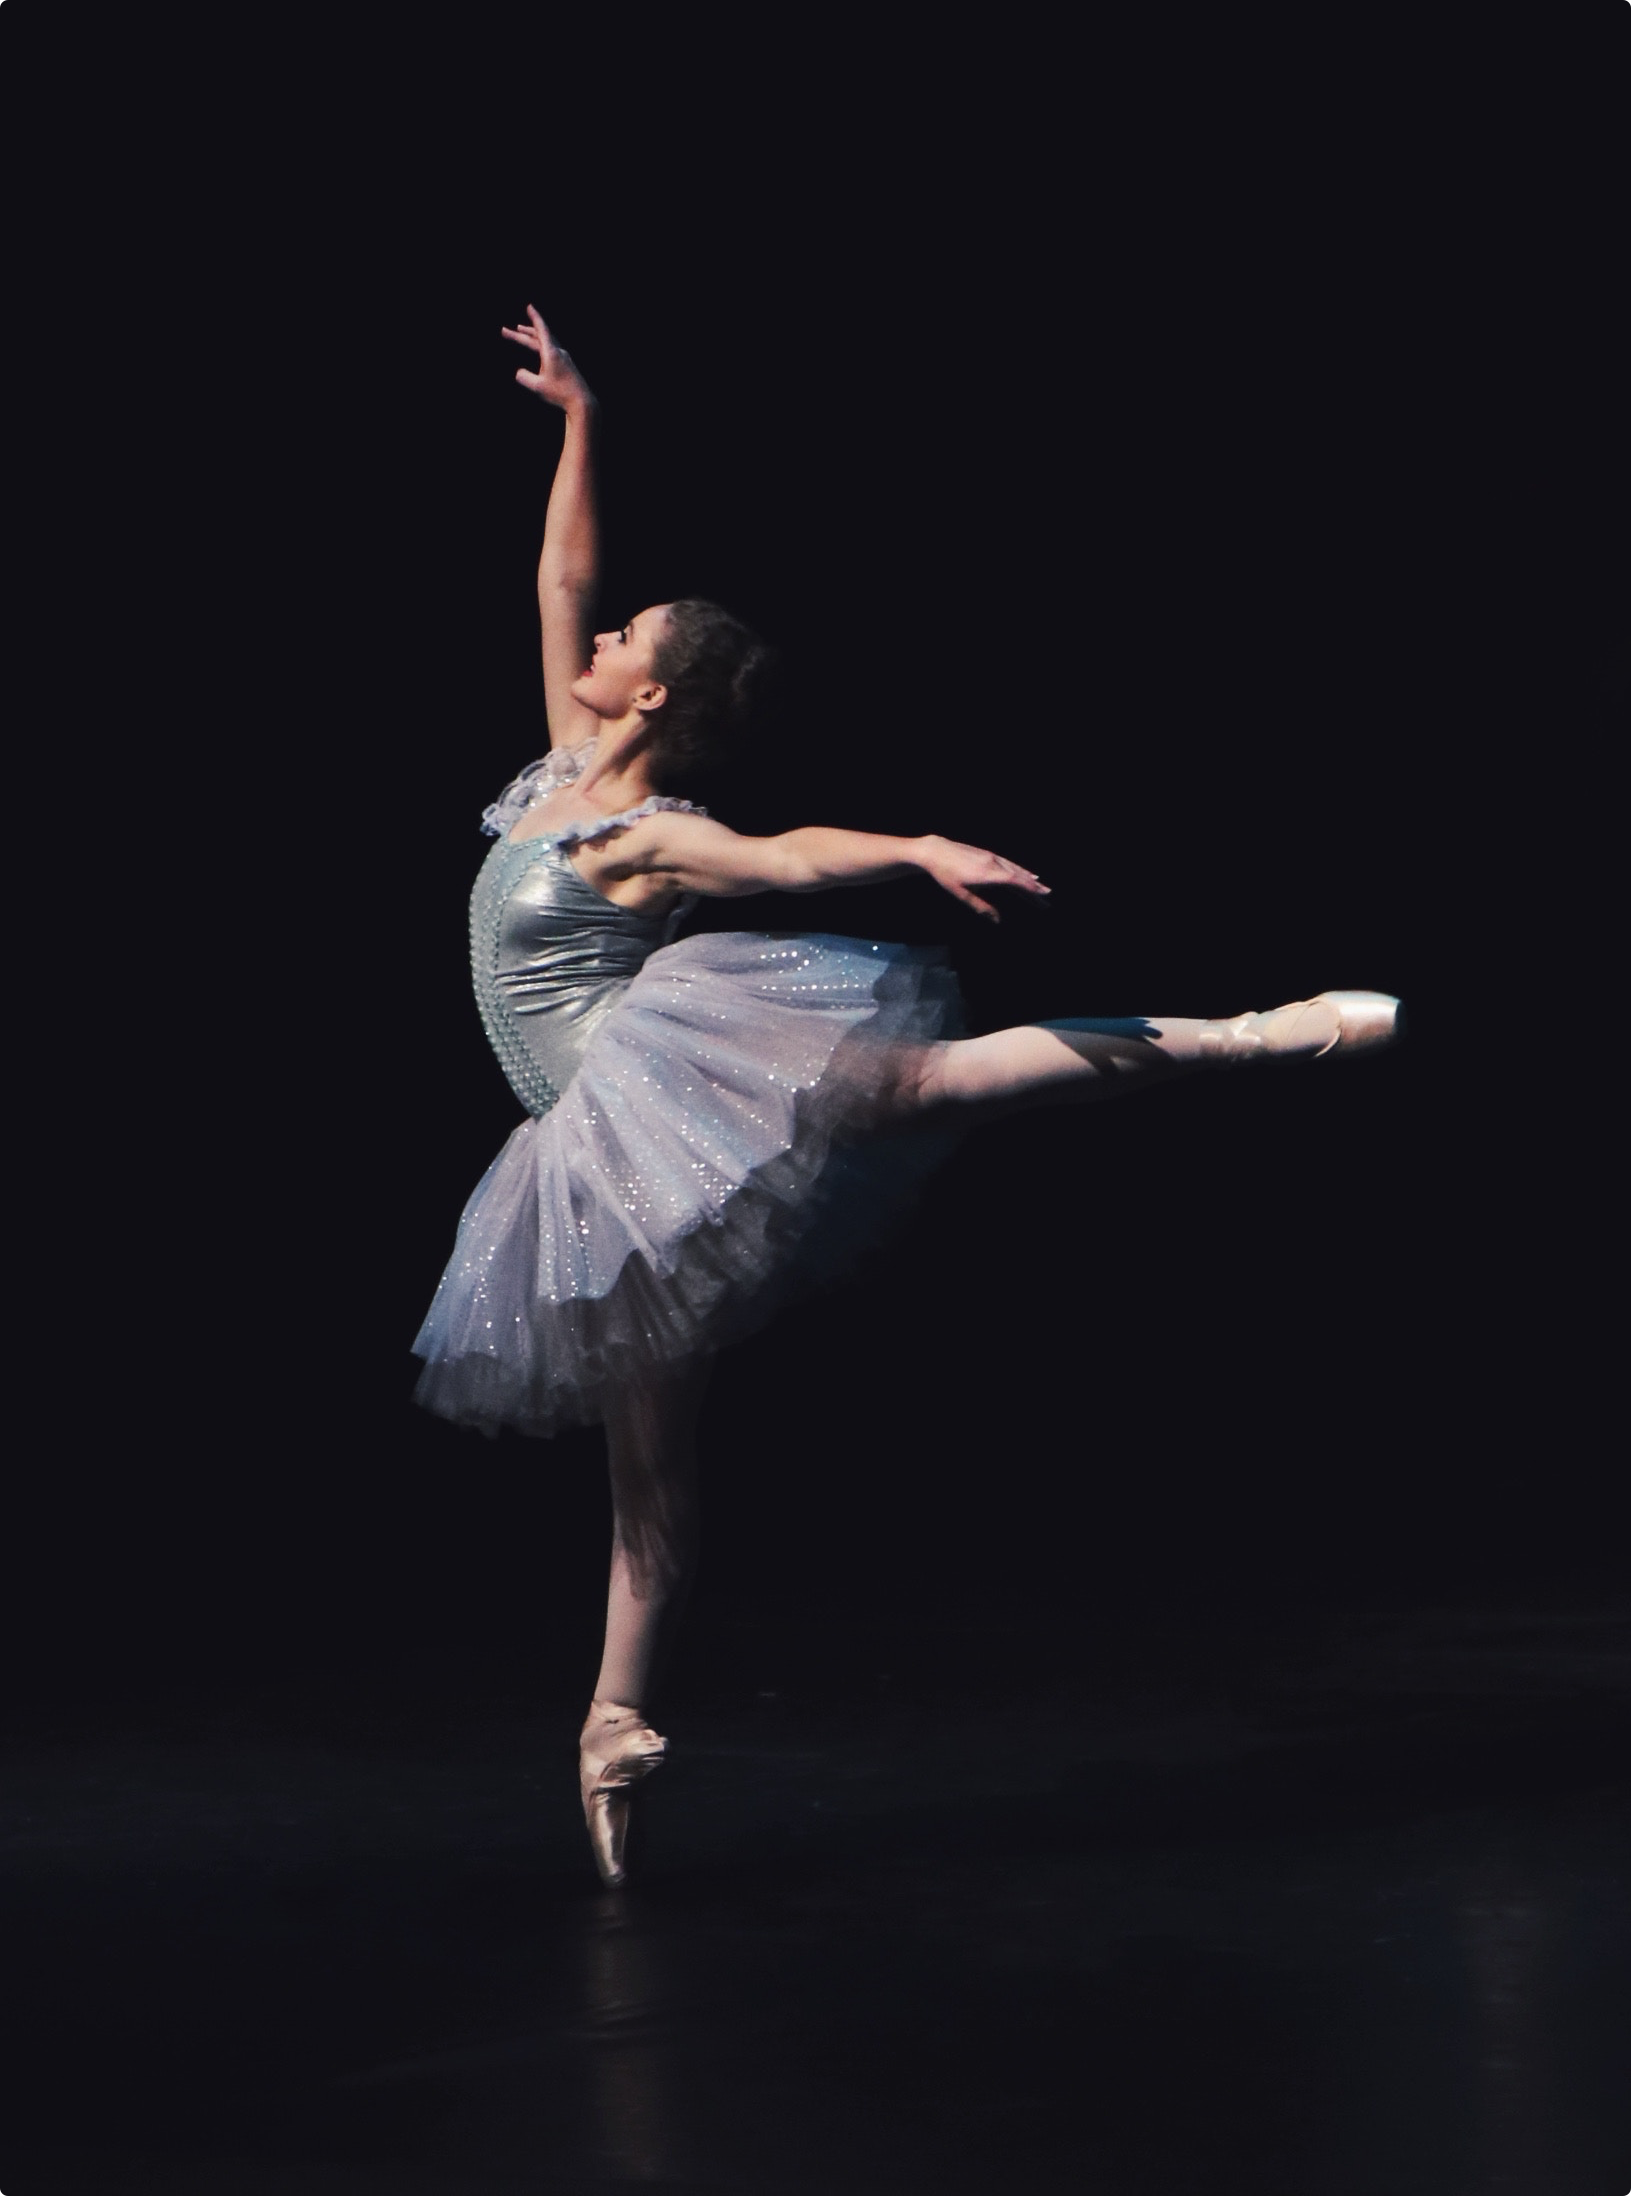 Ballet Dancer - Photo by Hudson Hintze on Unsplash